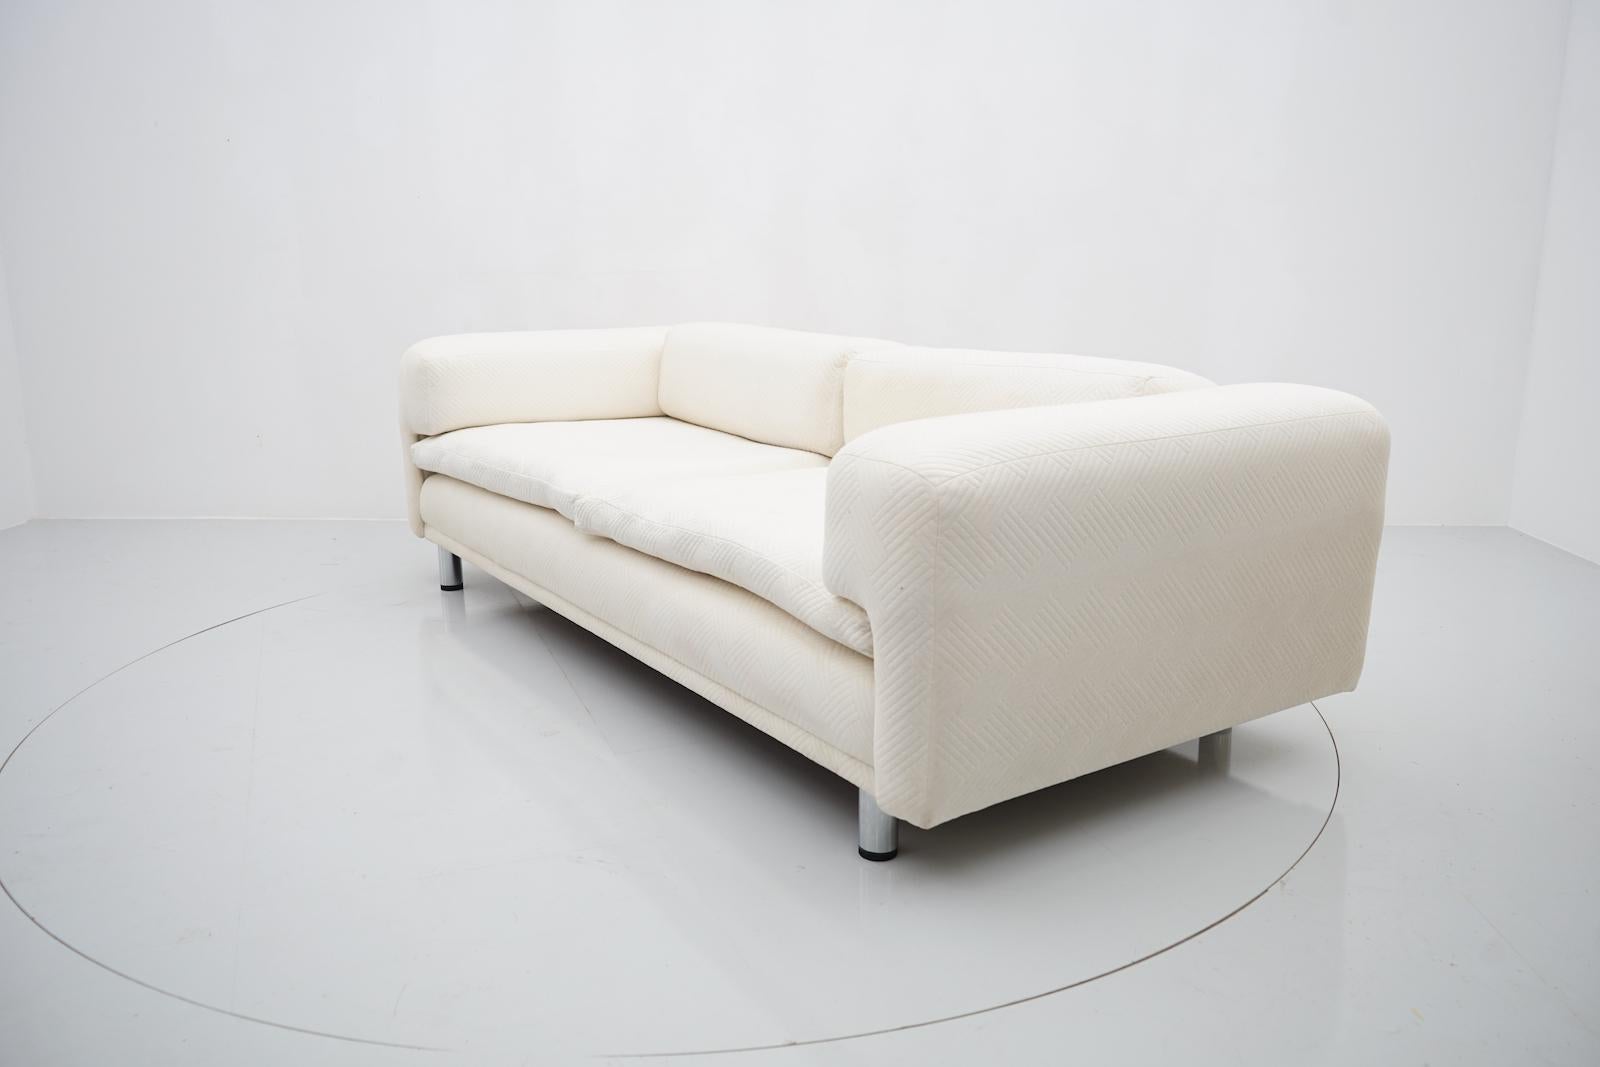 Fabric Howard Keith Grand Diplomat Sofa John Home HK Furniture 70s